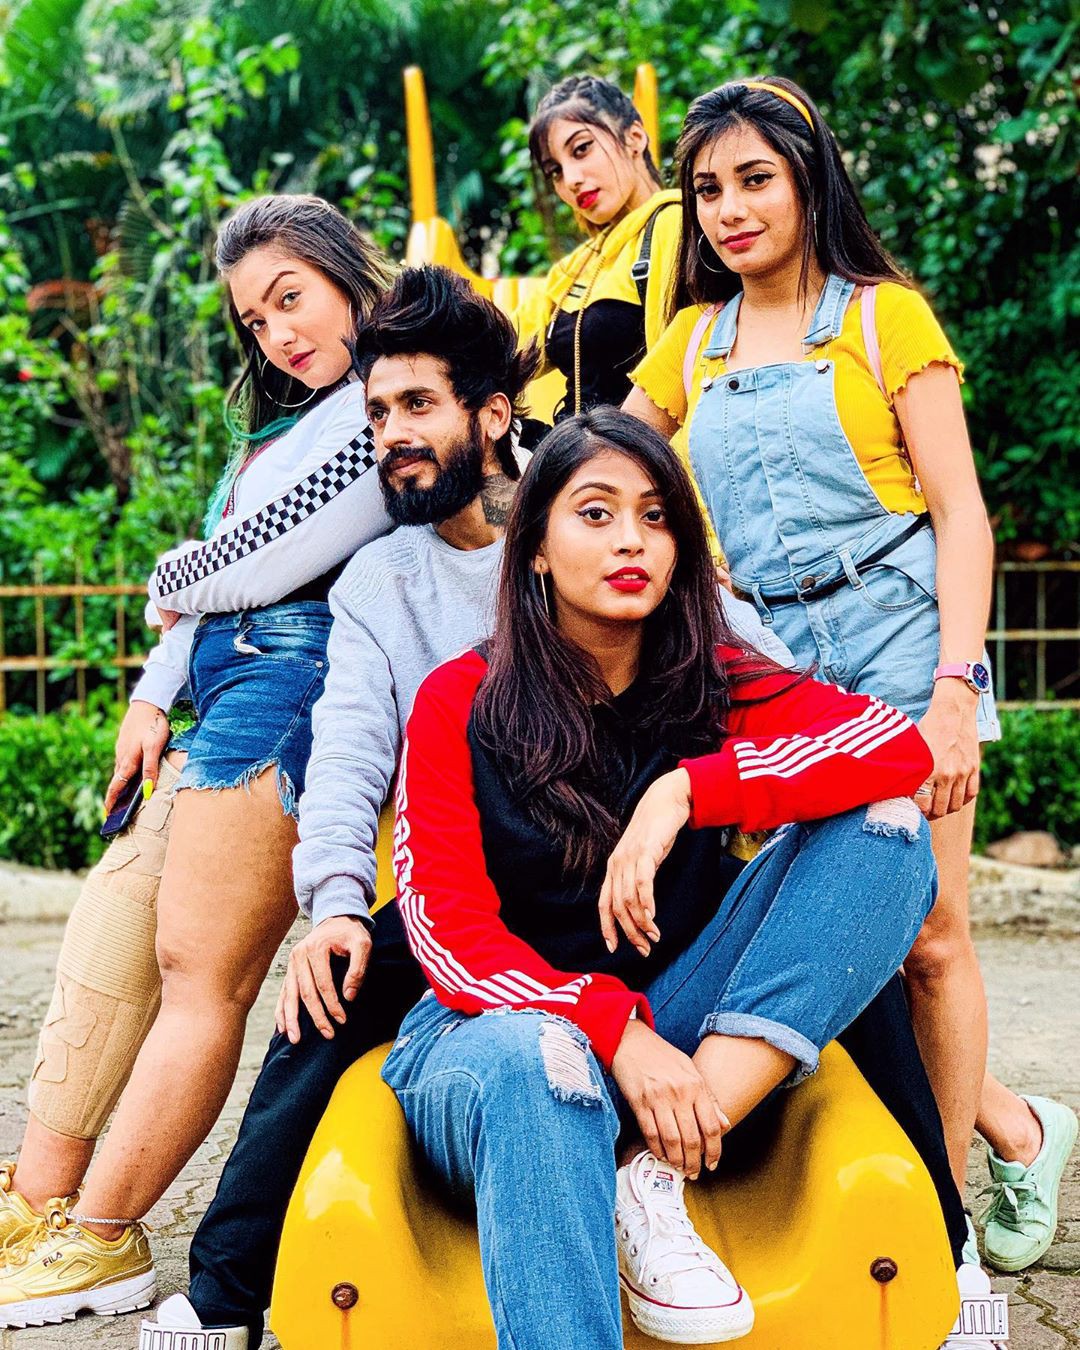 El fondo de pantalla de Facebook más popular de Bitter Ashika Bhatia: Instagram de chicas calientes,  fotos calientes de insta,  chicas calientes de insta,  linda aashika bhatia,  Foto caliente de TikTok,  Instagram de Aashiq Bhatia,  Chicas Tik Tok,  Modelos calientes de TikTok  